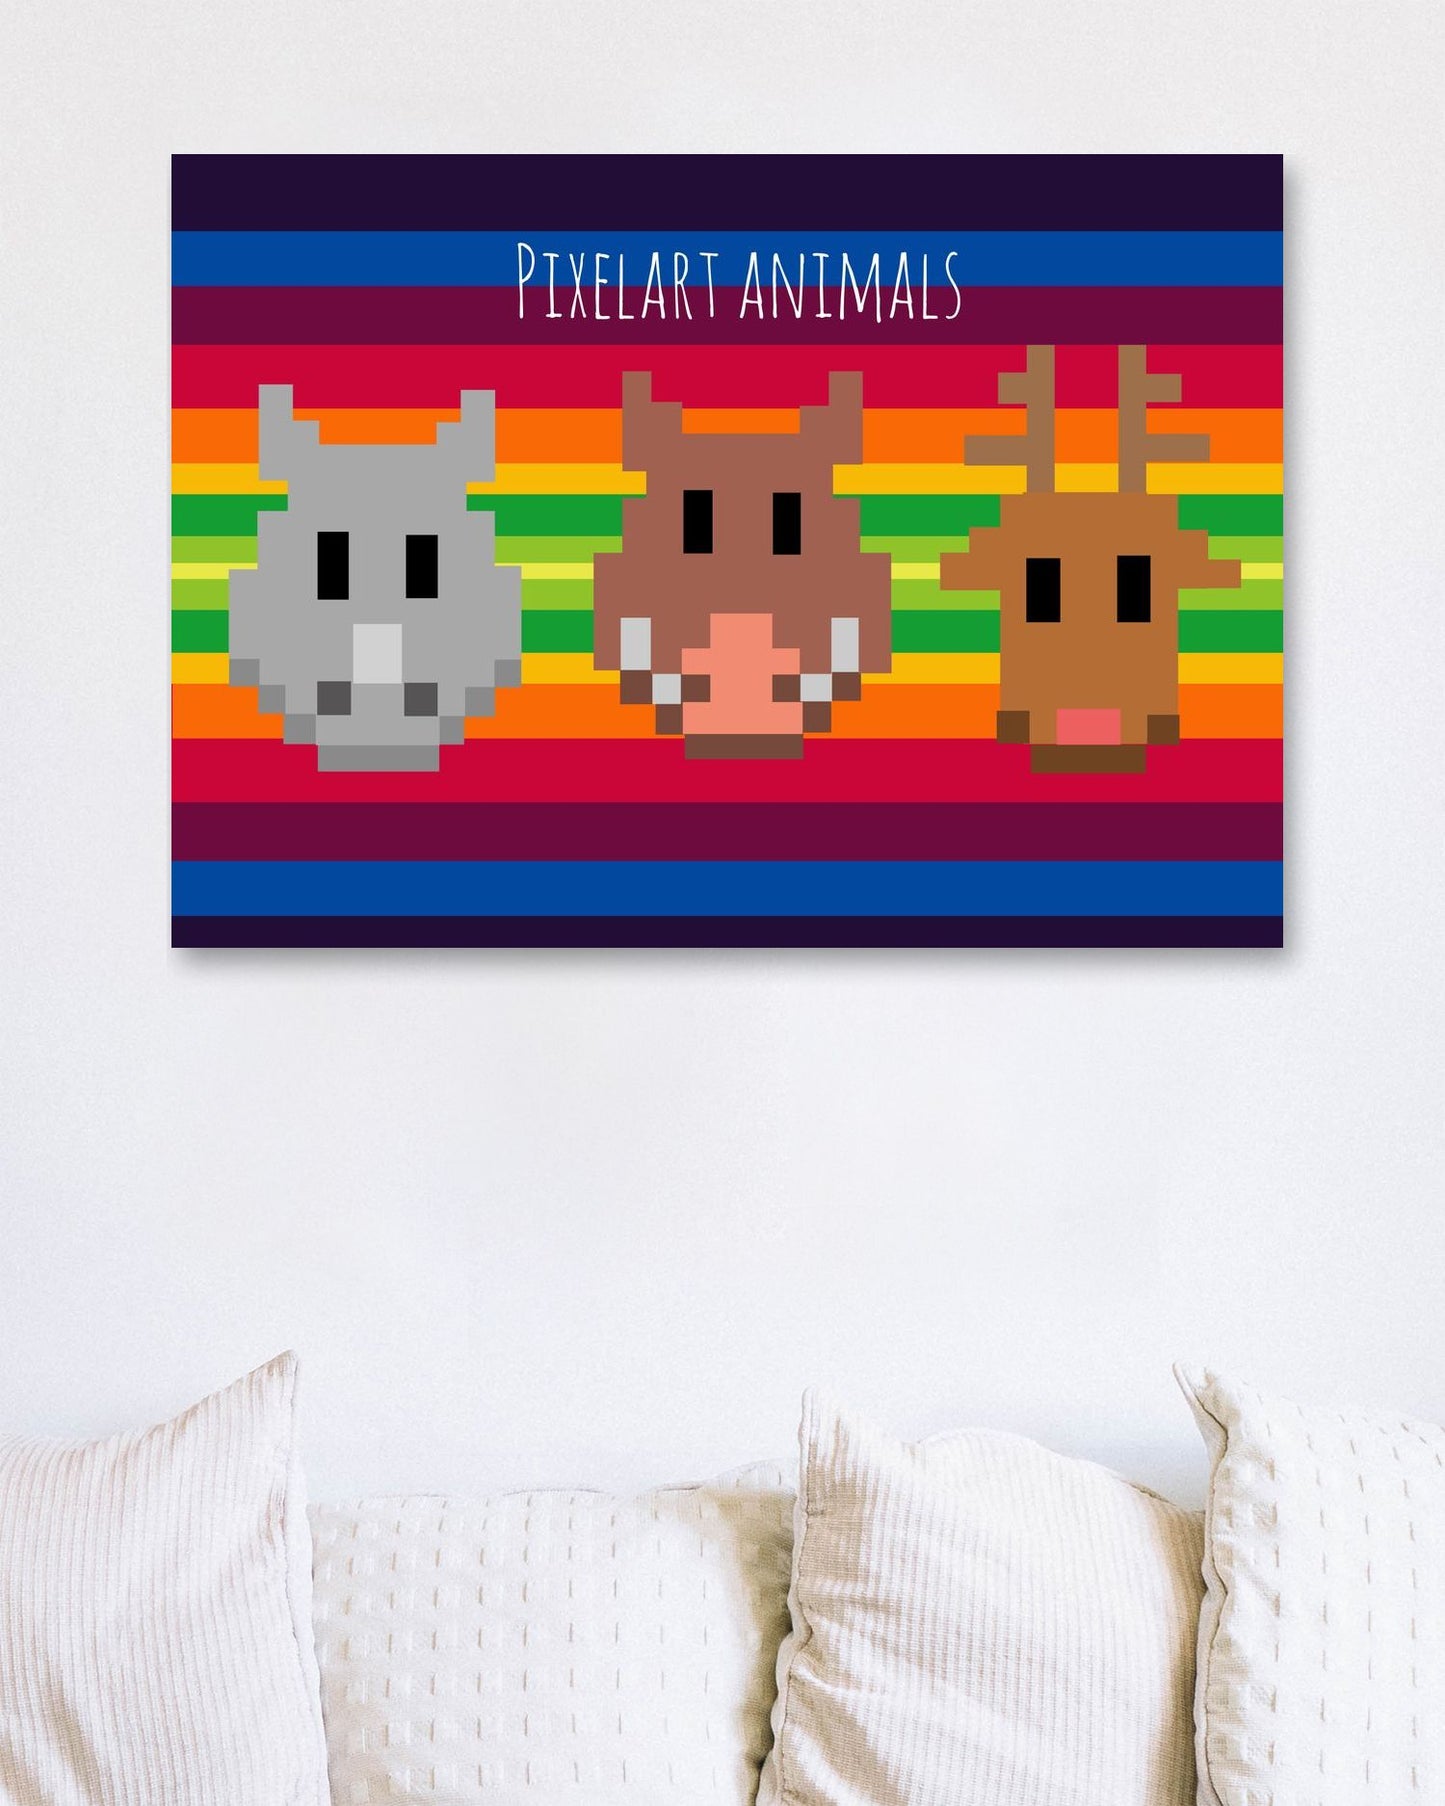 pixelart animals - @msheltyan